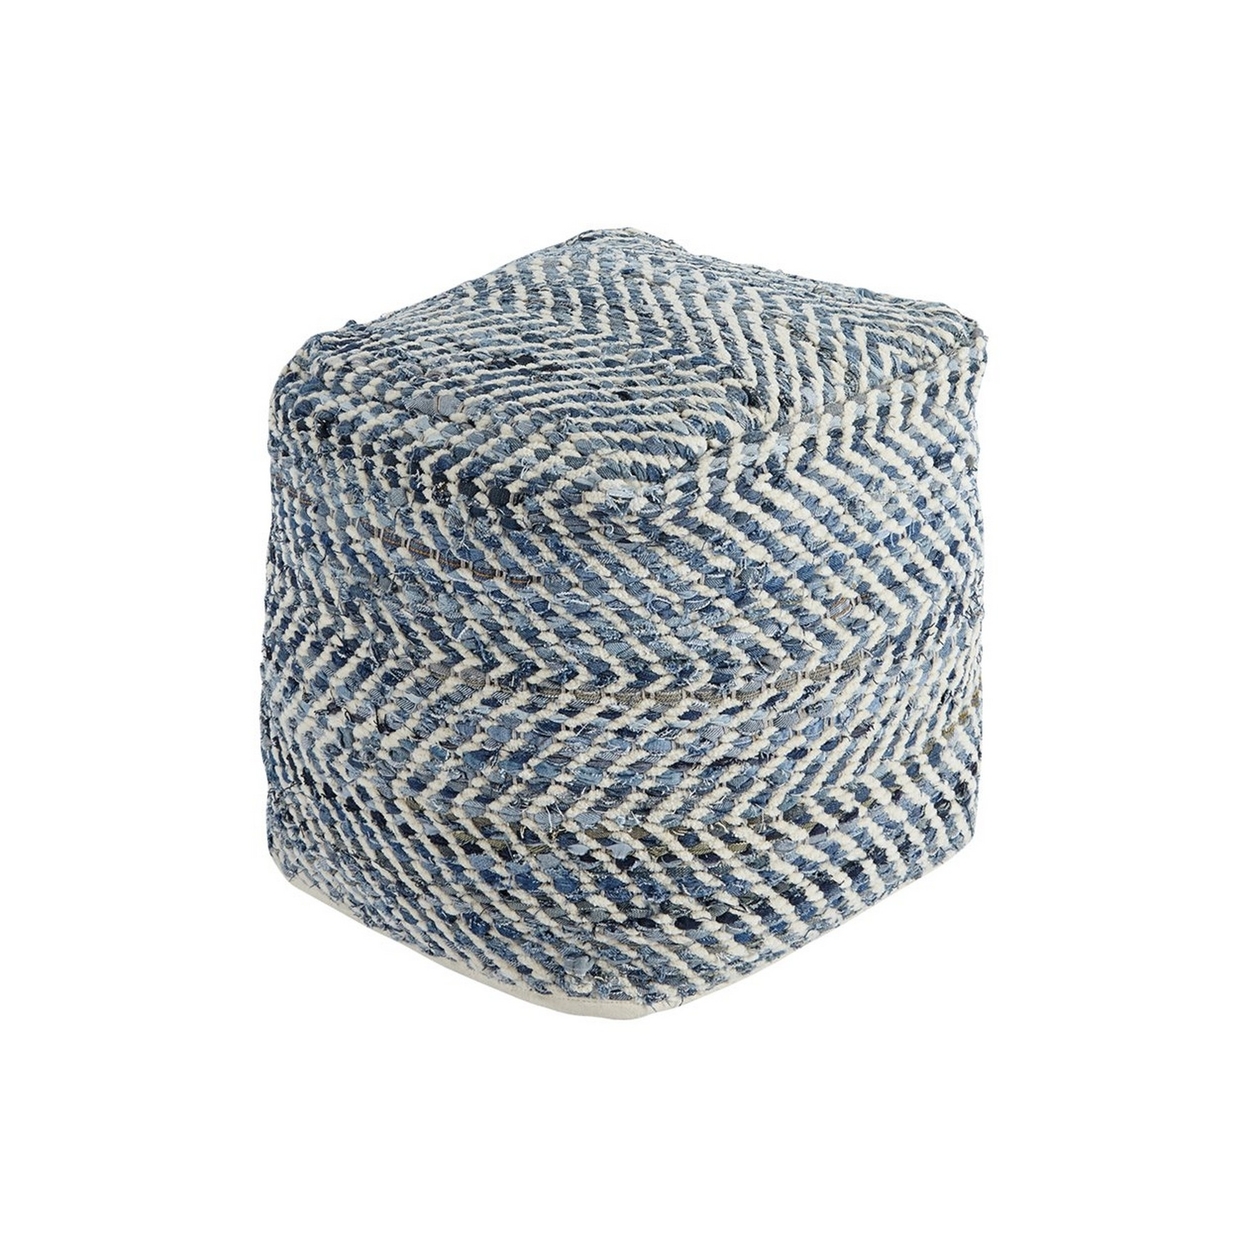 Fabric Round Shaped Pouf With Chevron Pattern, Blue- Saltoro Sherpi